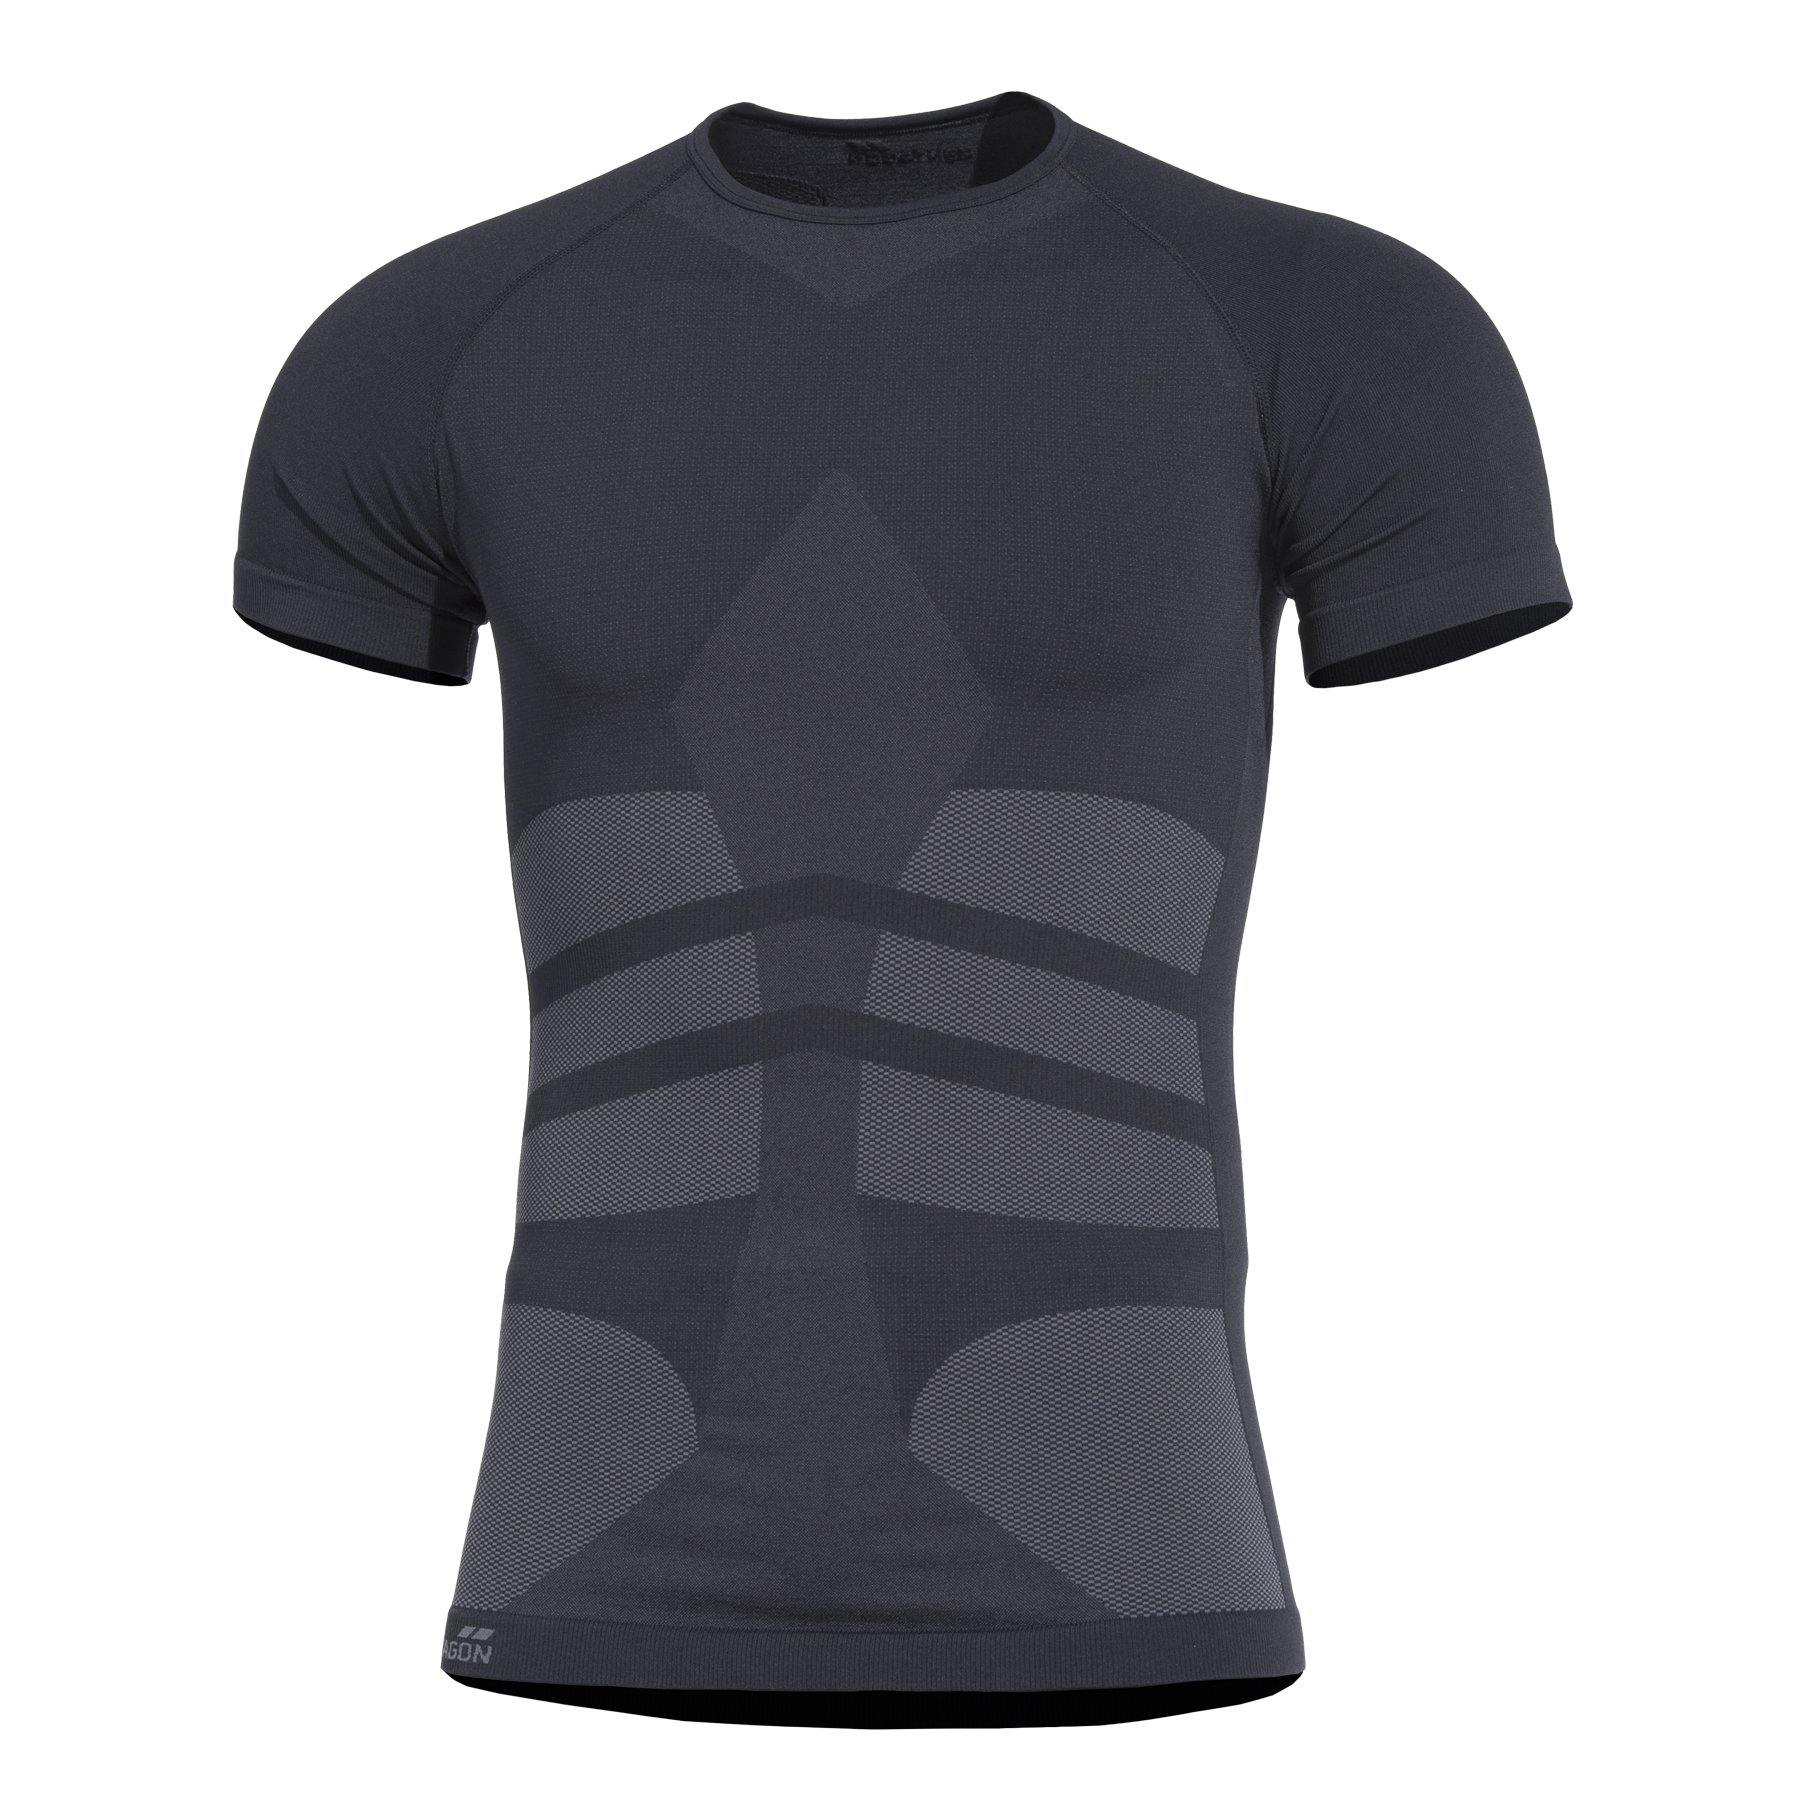 Pentagon - Plexis T-Shirt (Black) - Black-Tactical.com